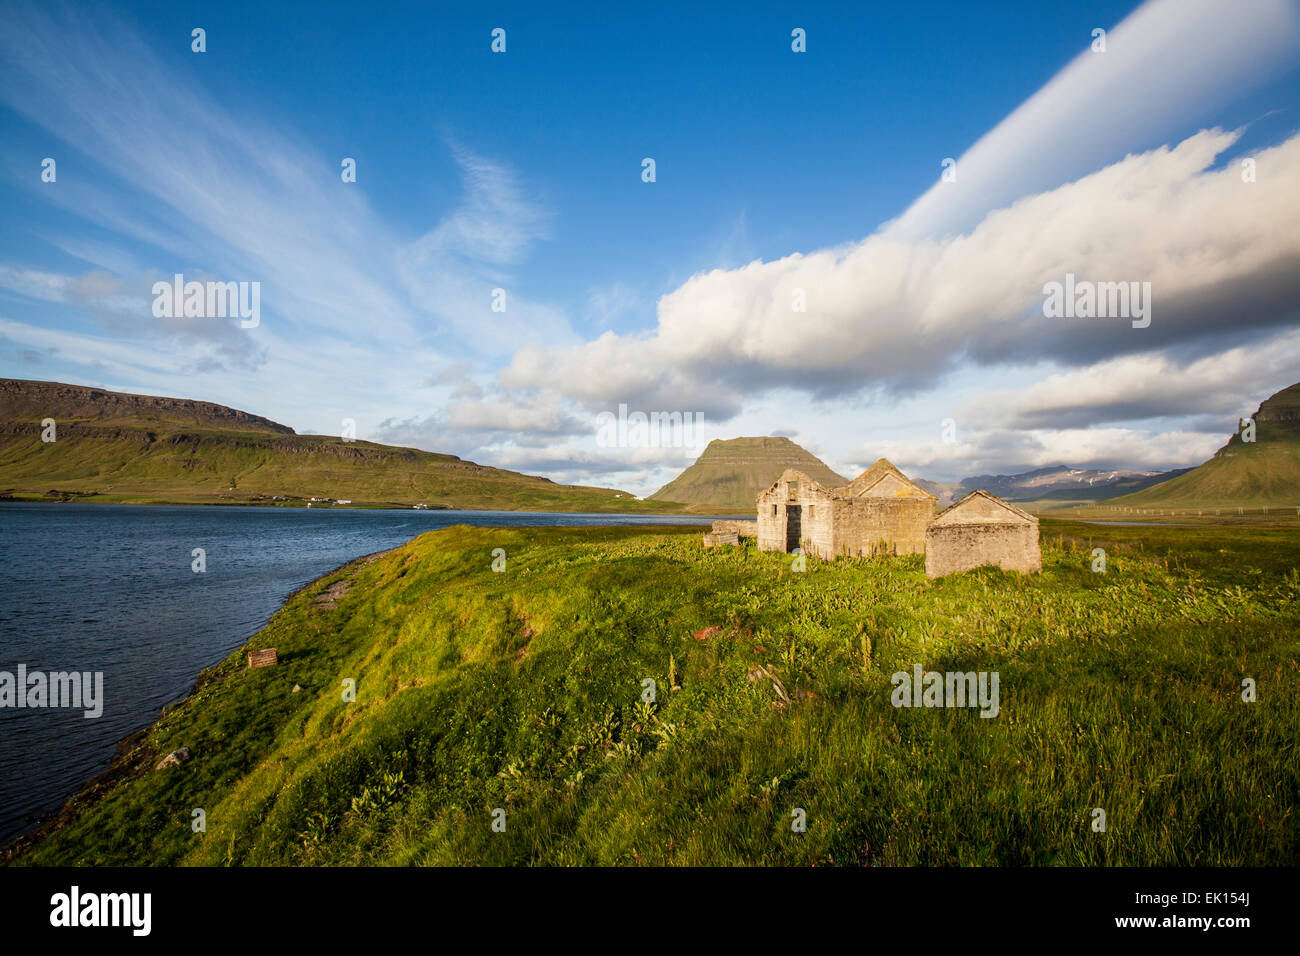 Abbandonato il vecchio casale in pietra sulla penisola Snaefellsnes in Islanda. Foto Stock